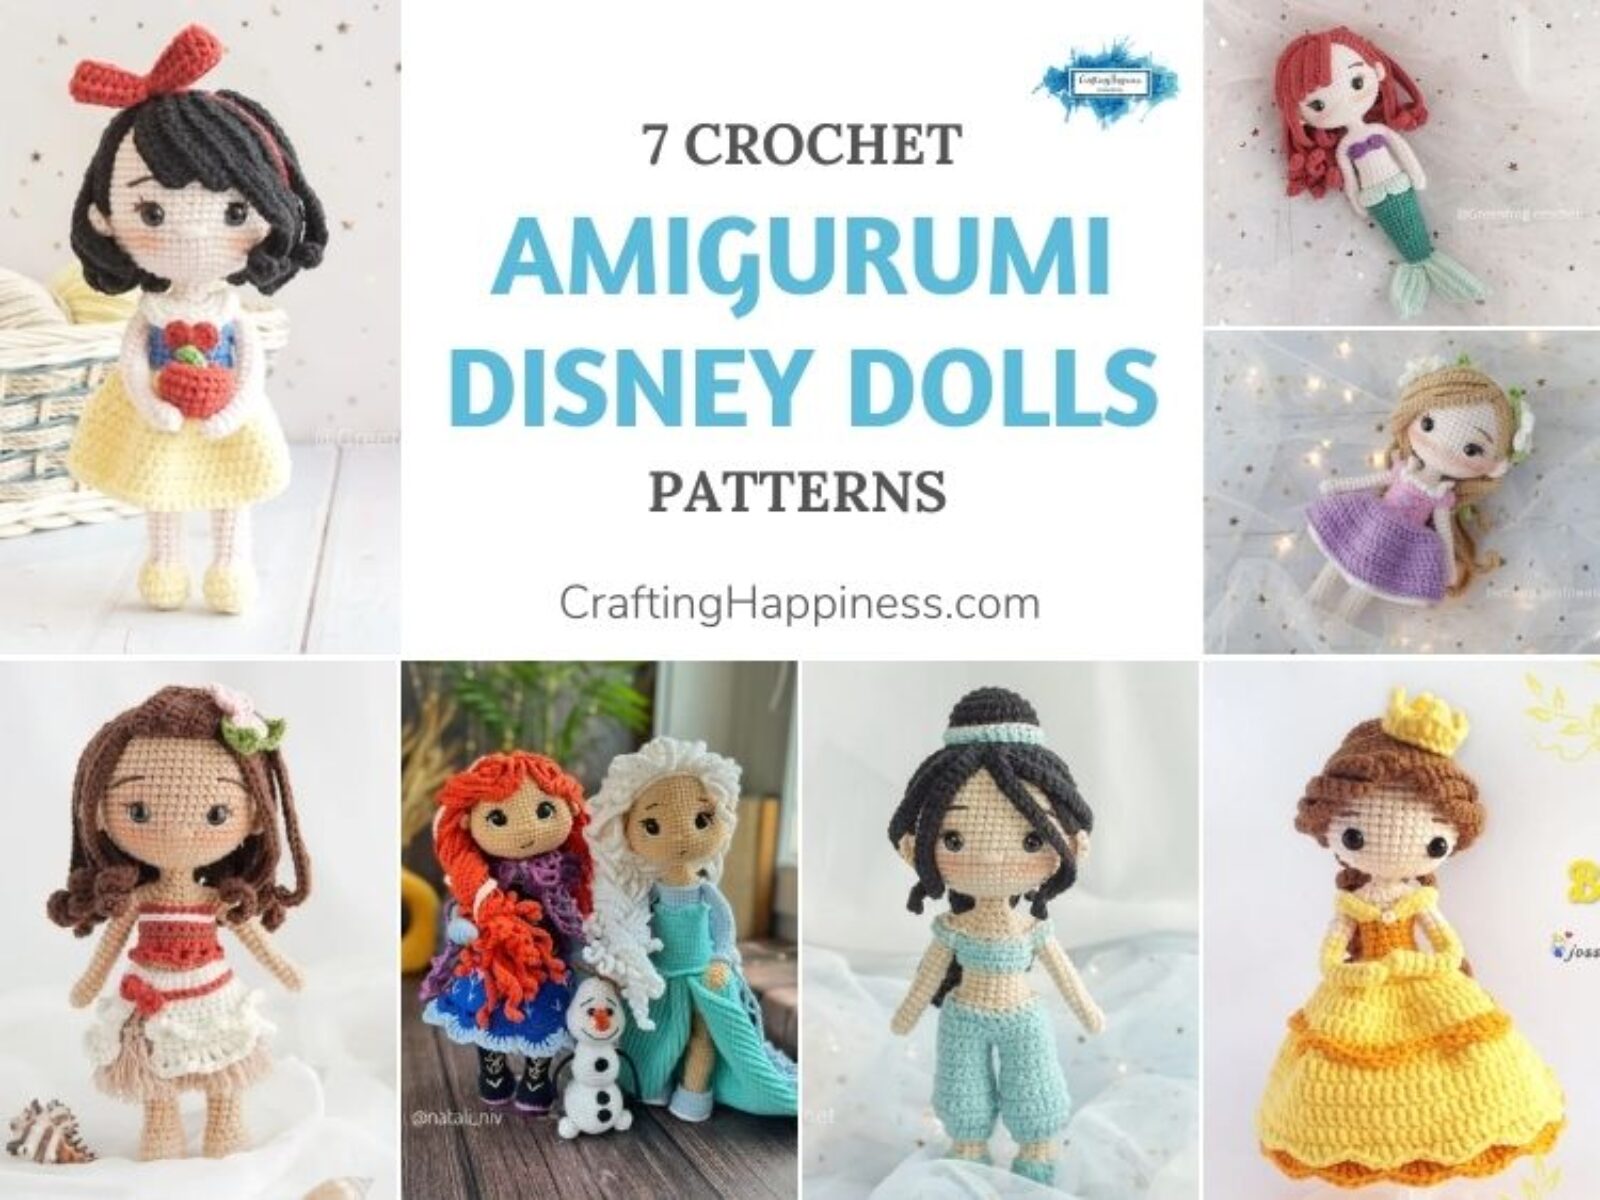 7 Crochet Amigurumi Disney Doll Patterns FB POSTER